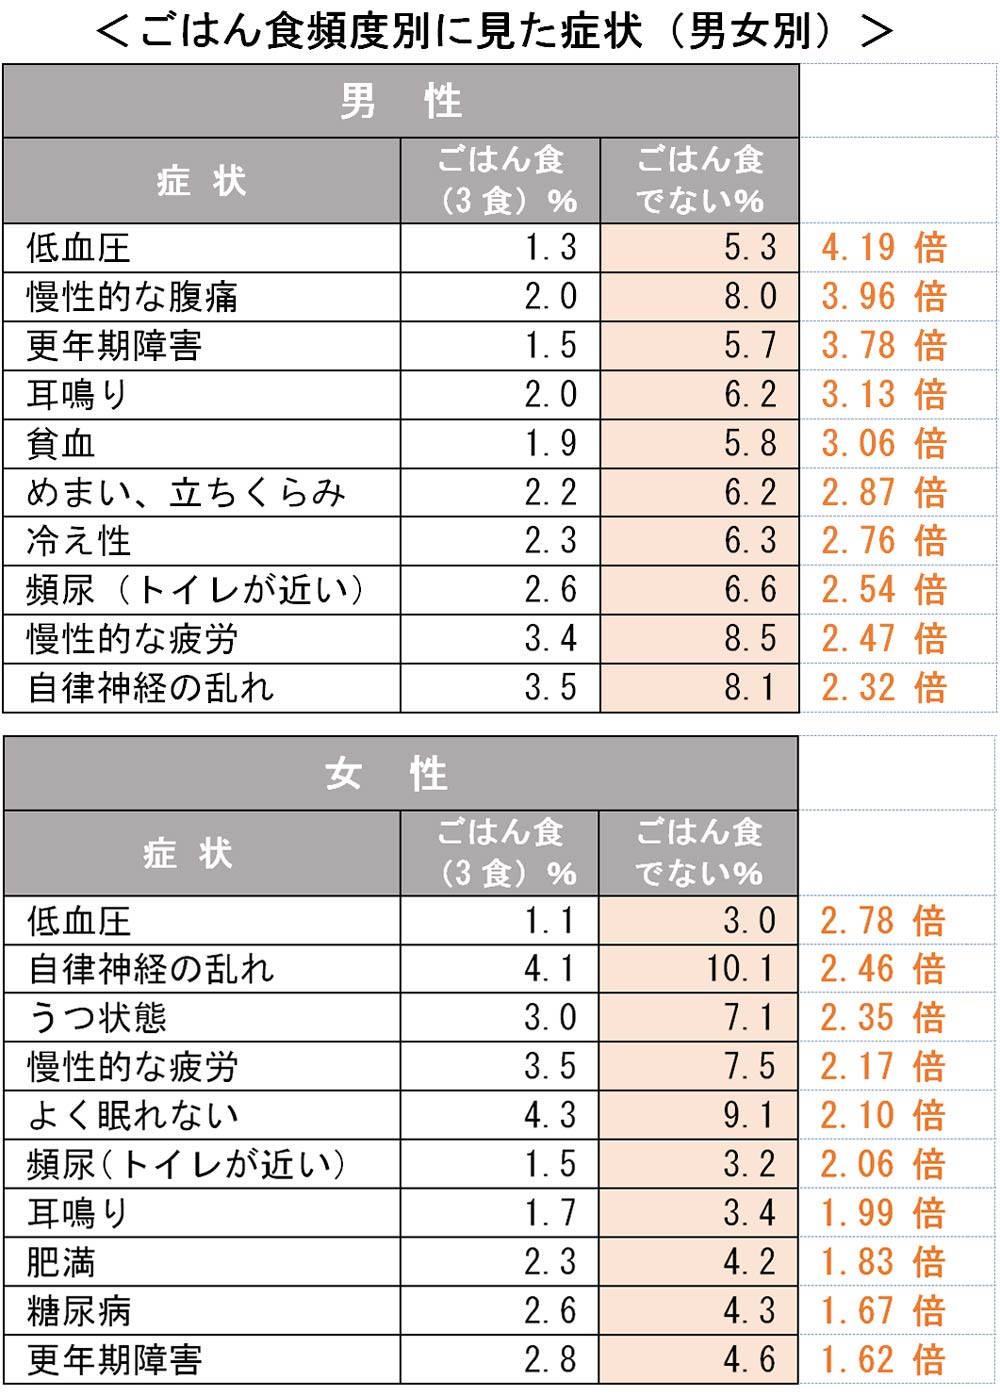 お米を食べない 都道府県ランキング 完全版 日本全国ストレスランキング ダイヤモンド オンライン